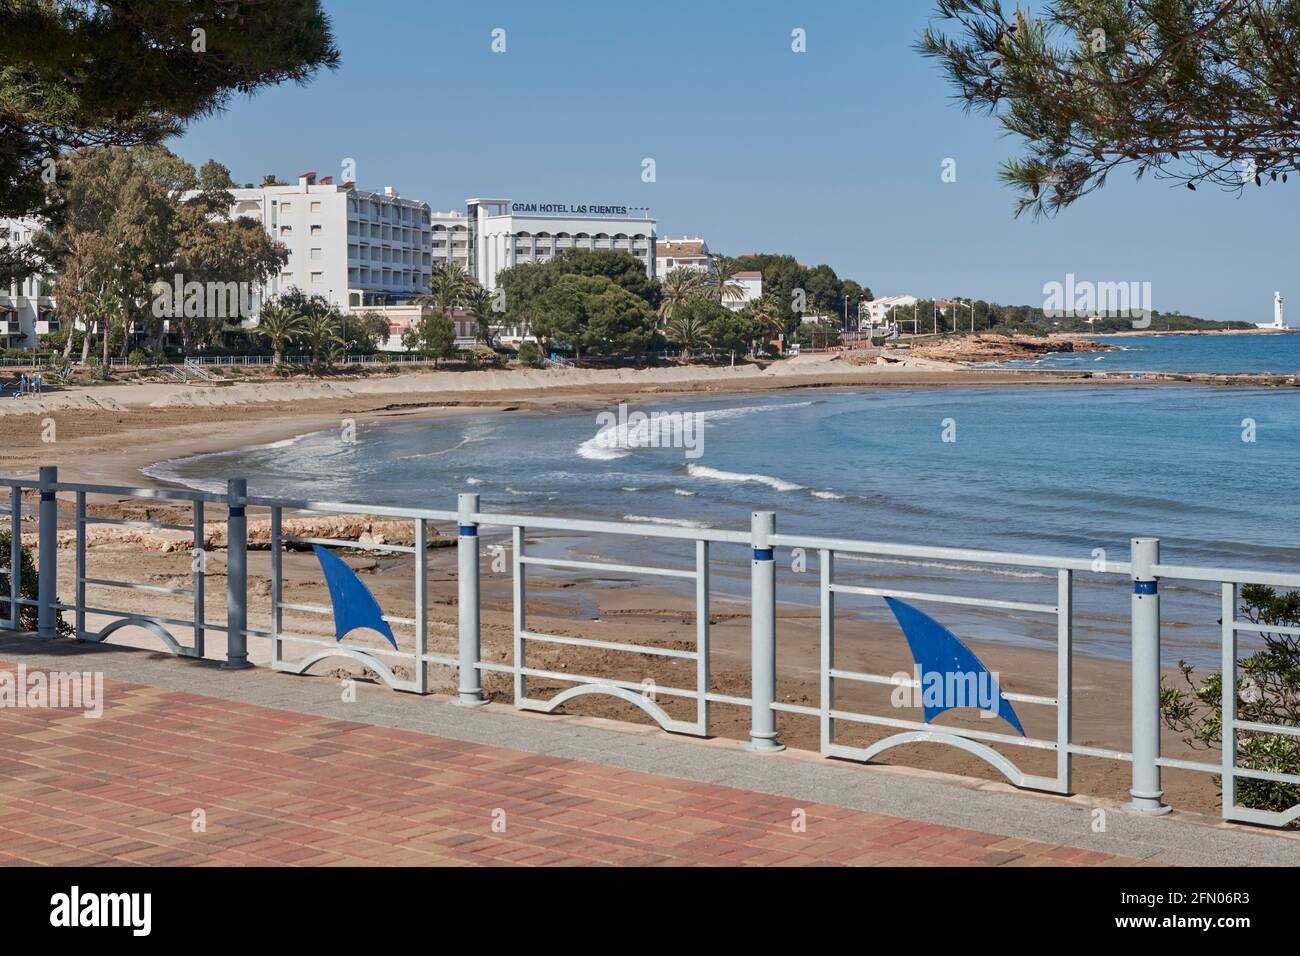 Las Fuentes beach in Alcossebre, Costa del Azahar province of Castellon,  Spain, Europe Stock Photo - Alamy